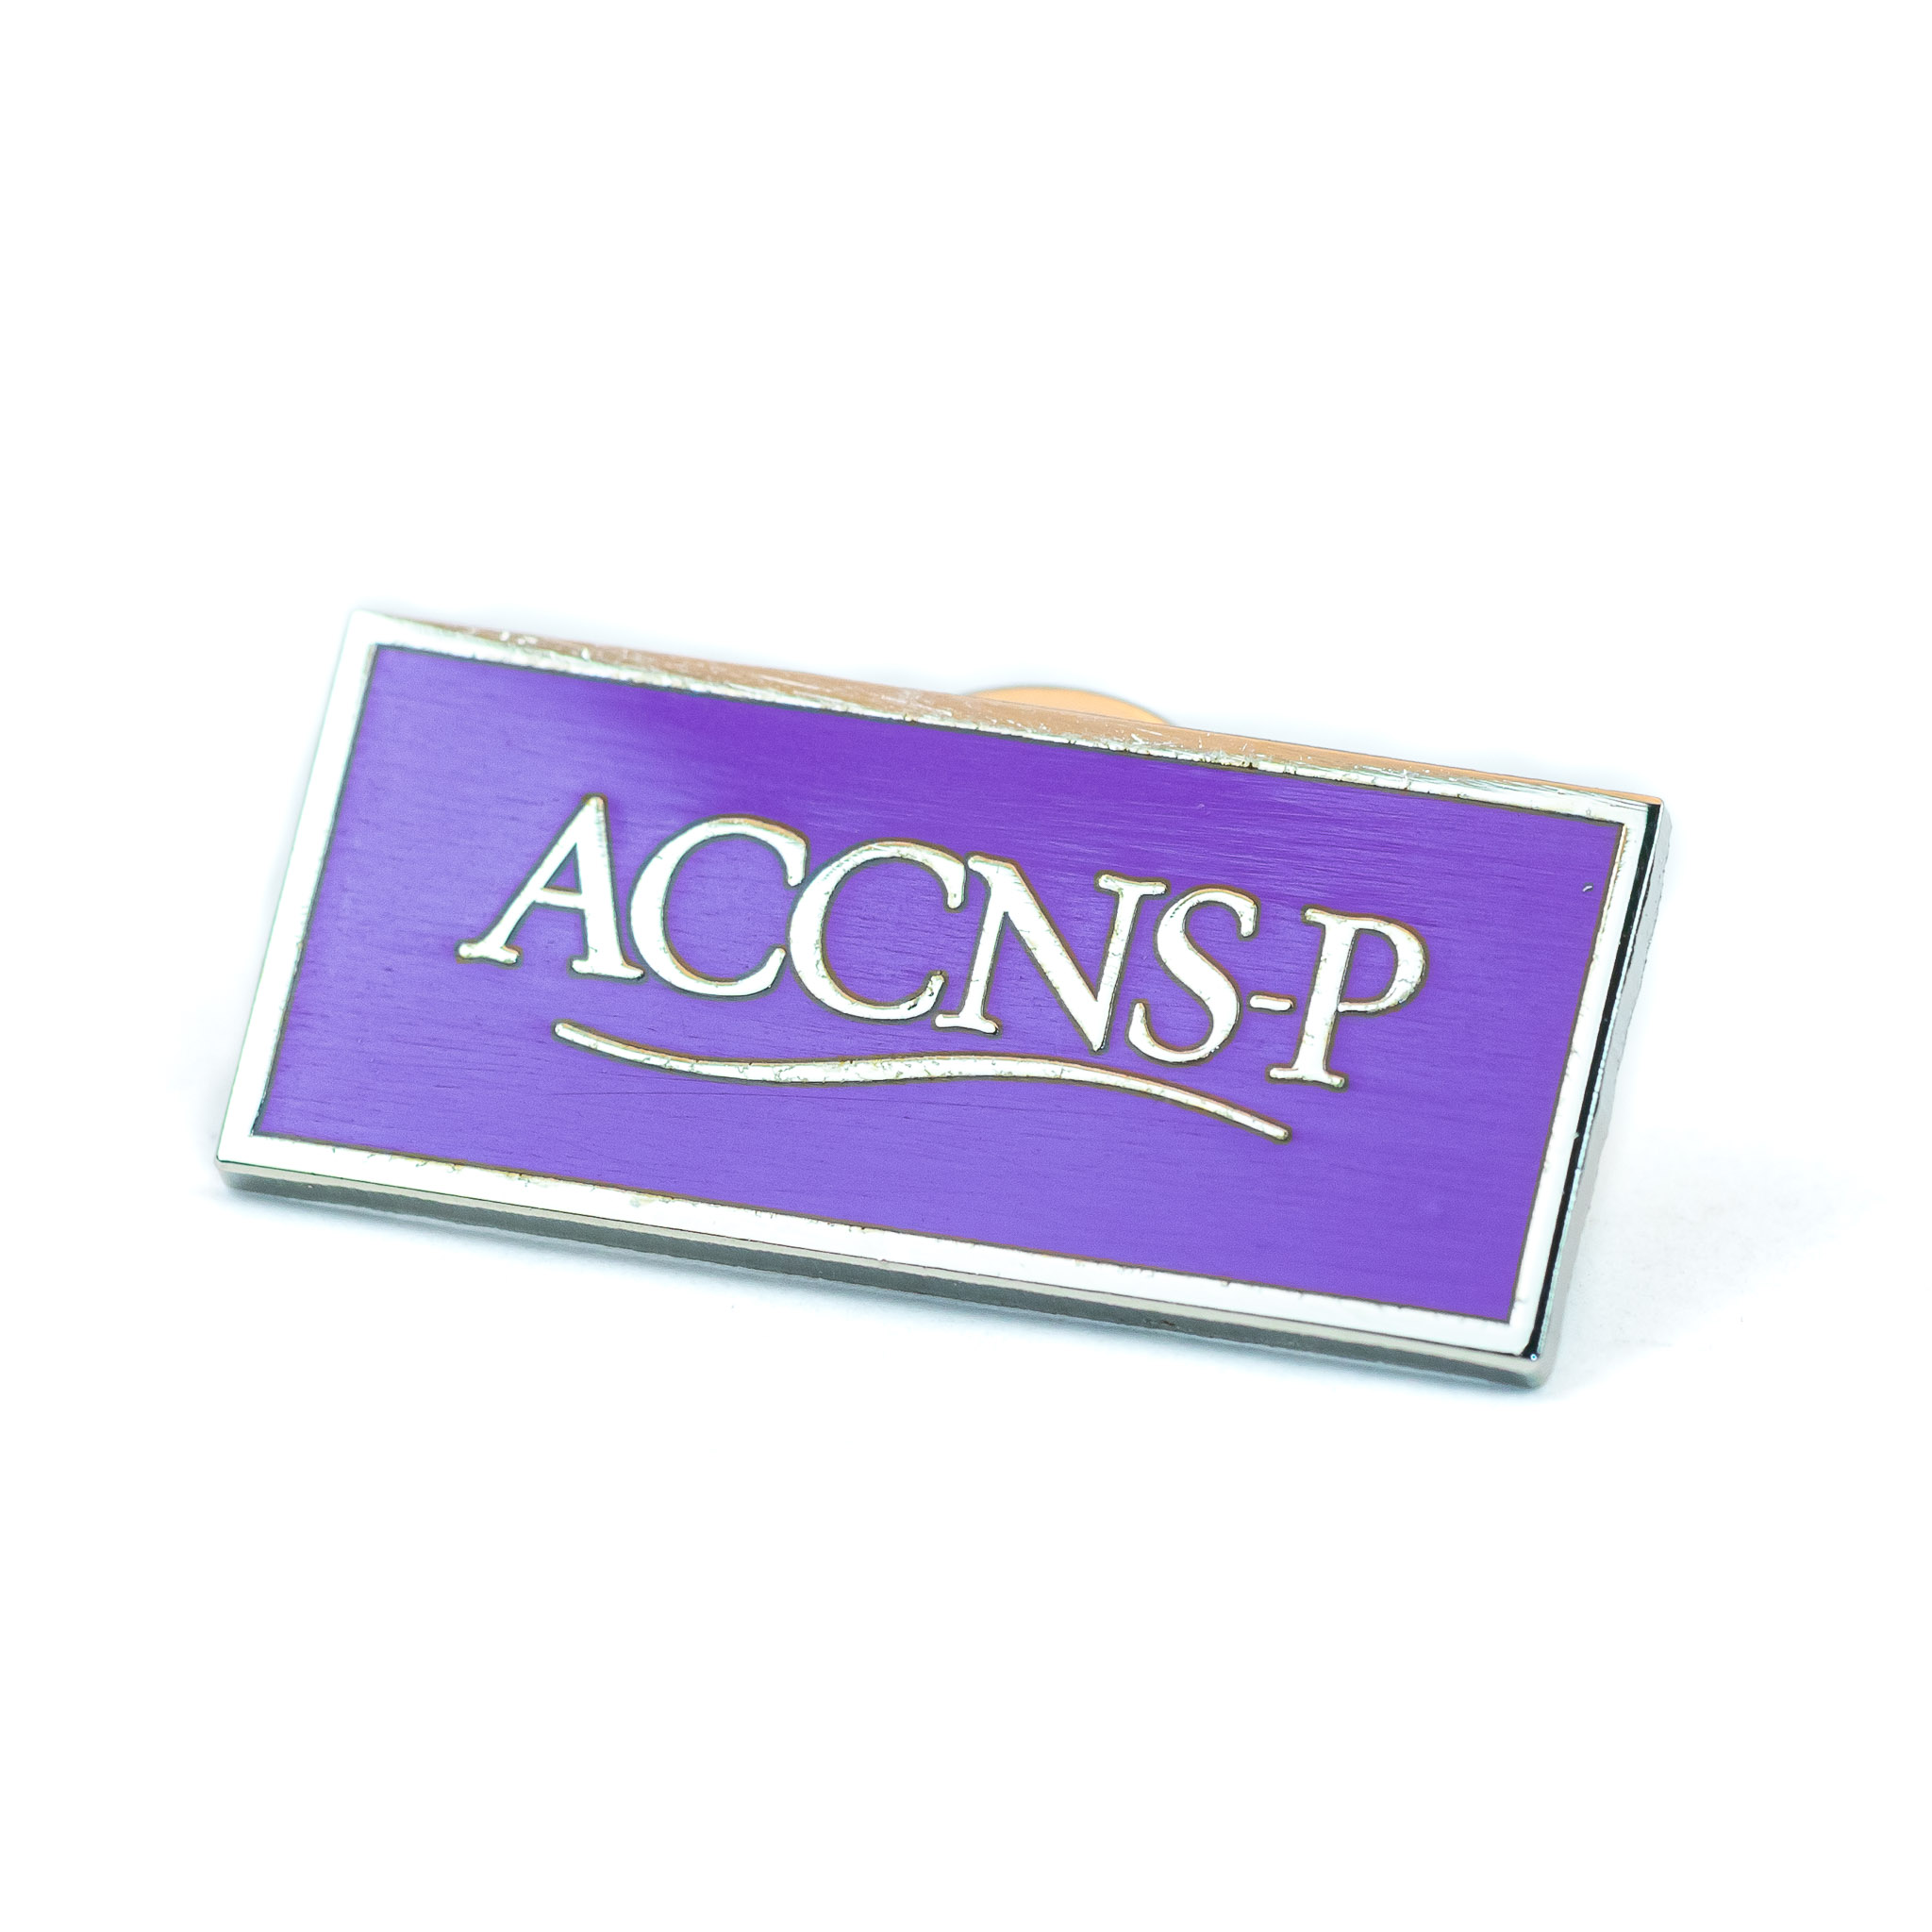 ACCNS-P Lapel Pin